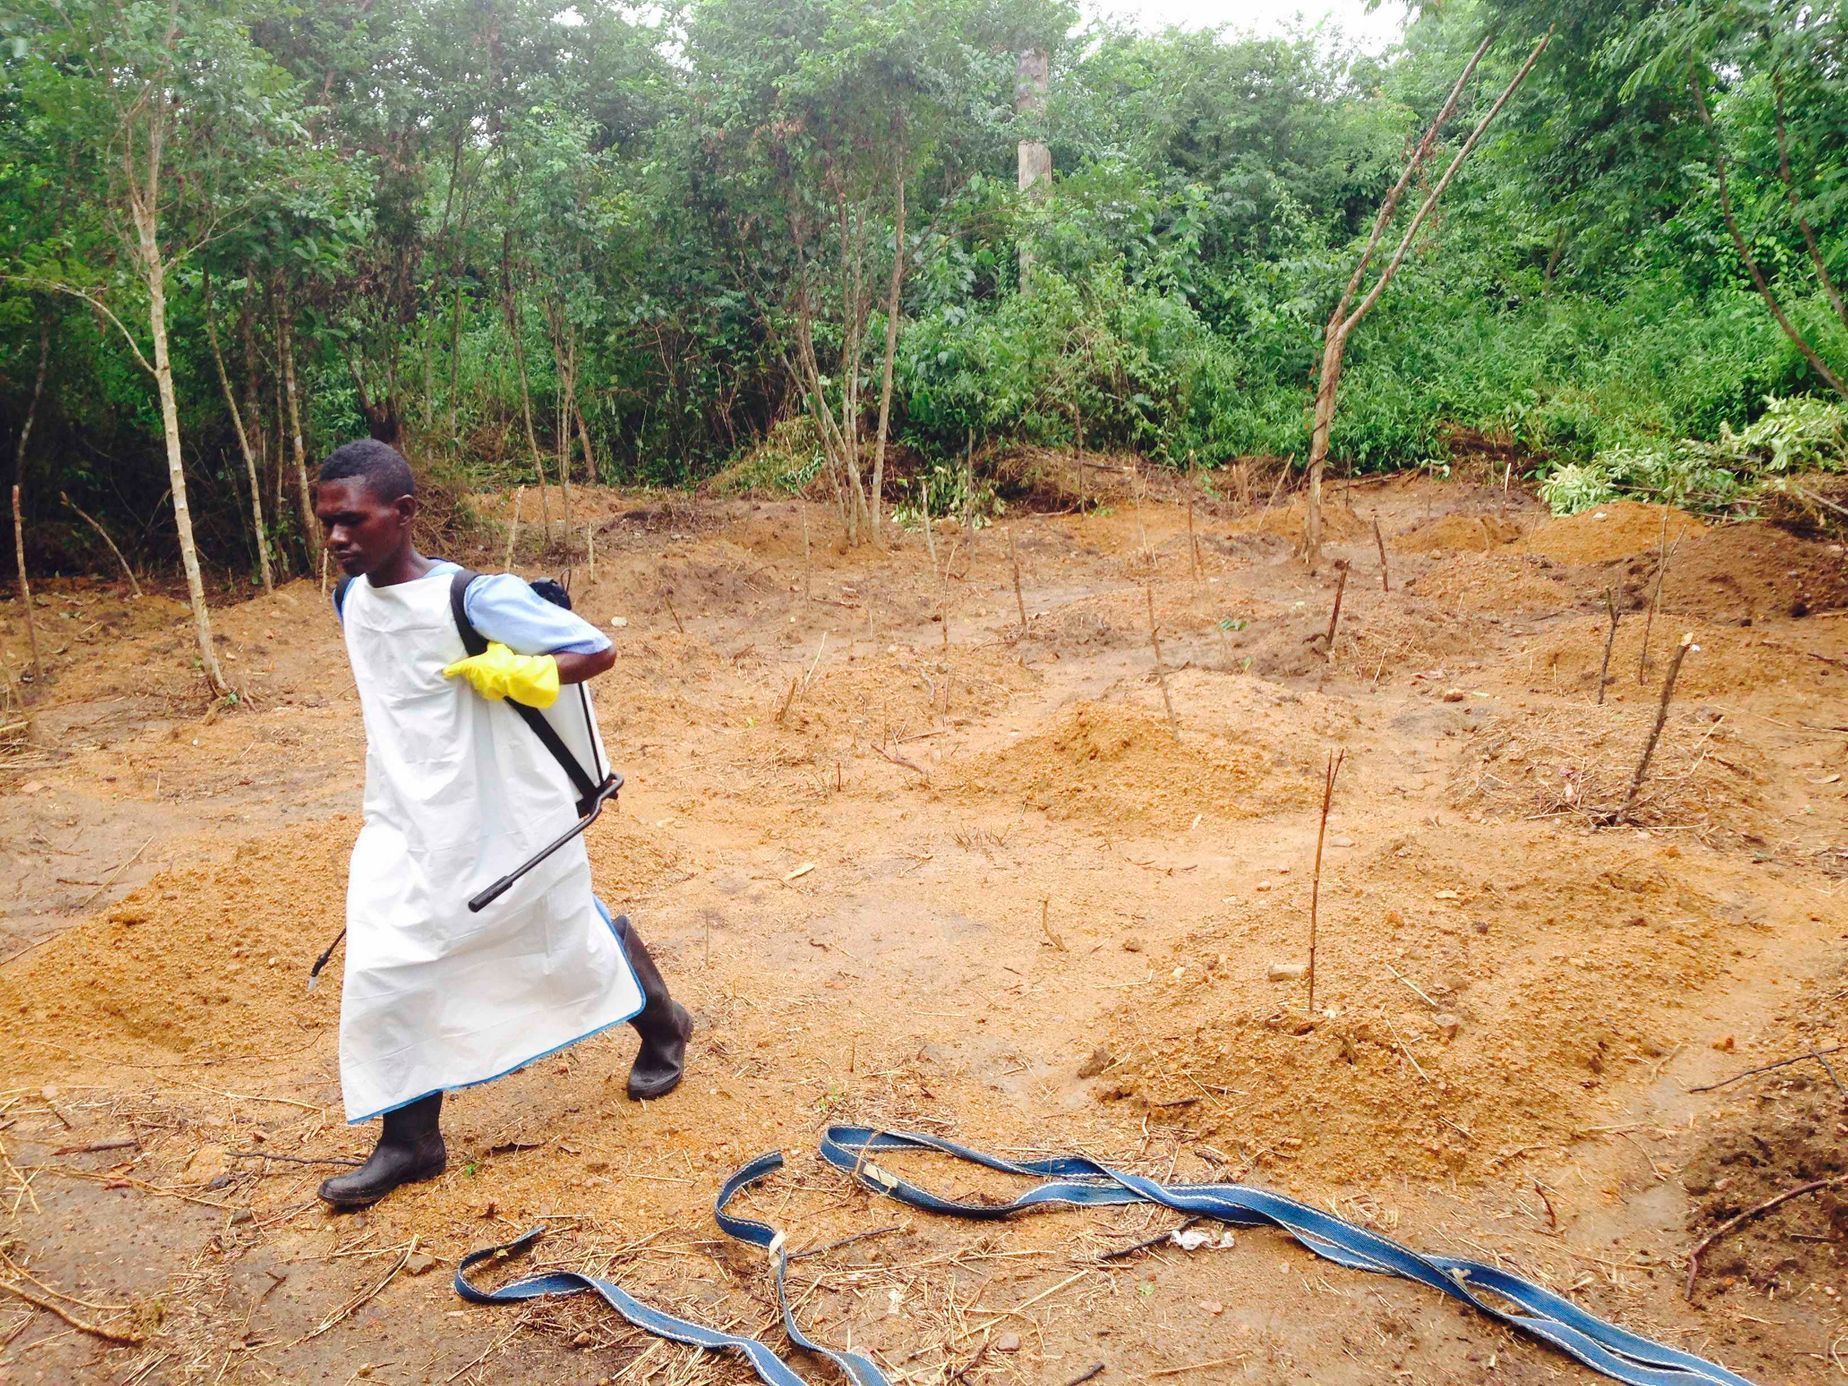 Dobrovolník pracuje v oblasti sužované ebolou.